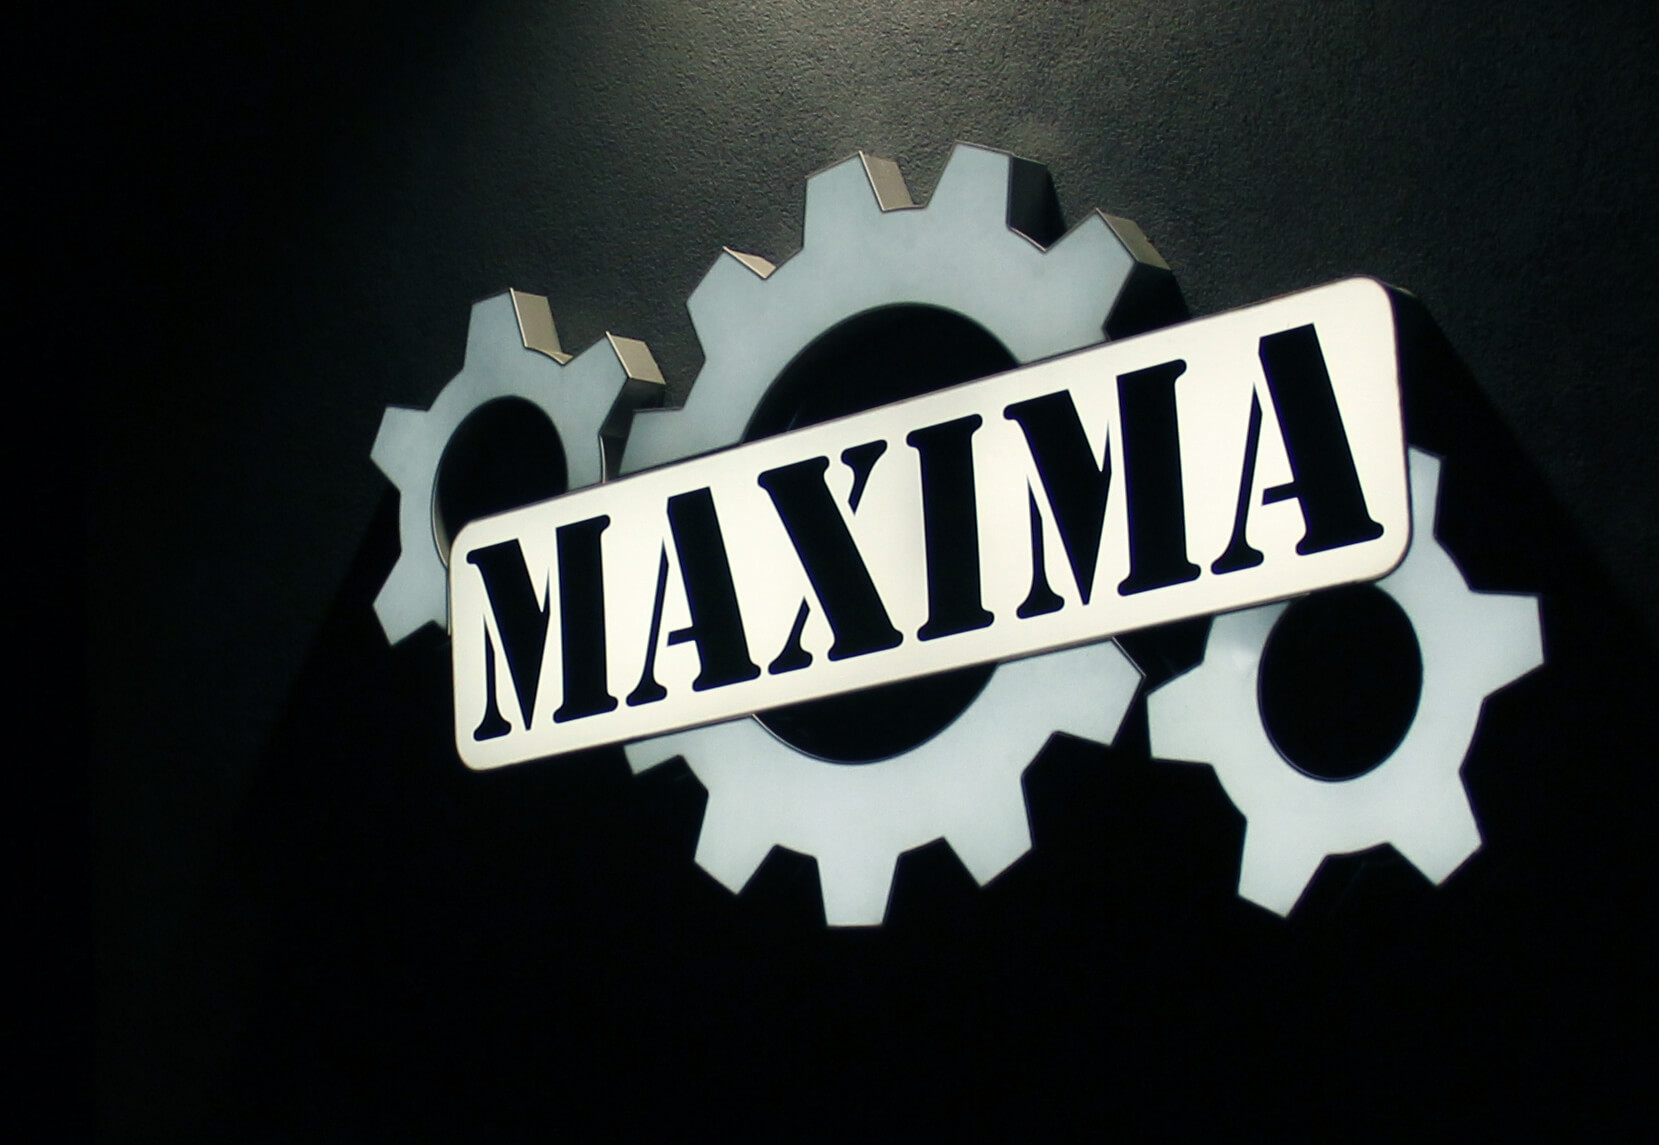 Máxima - Maxima - panel de leds en la pared con el logotipo de la empresa, hecho de plexiglás